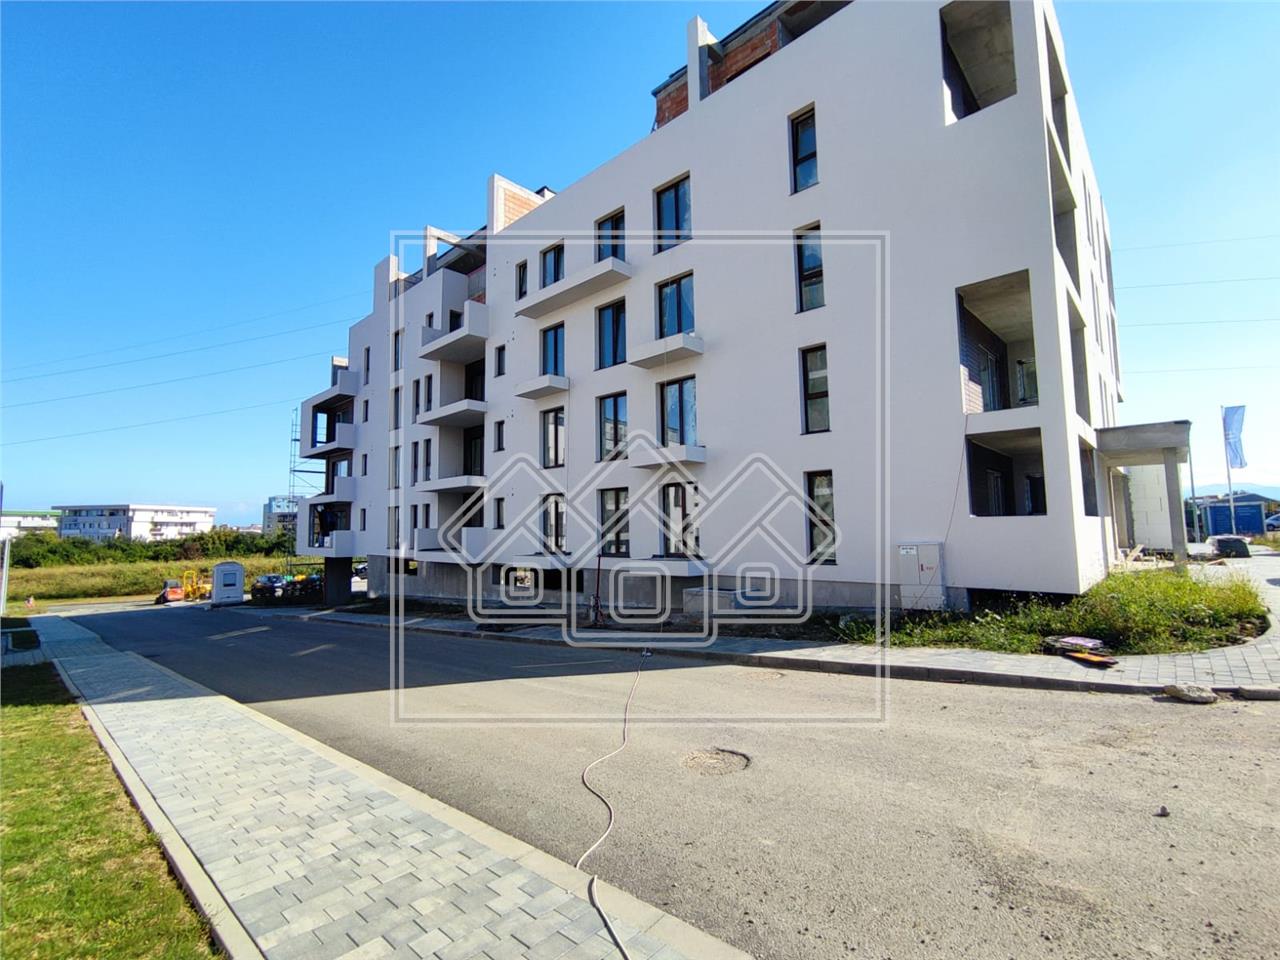 Wohnung zu verkaufen in Sibiu - 2 Balkone - Abstellraum